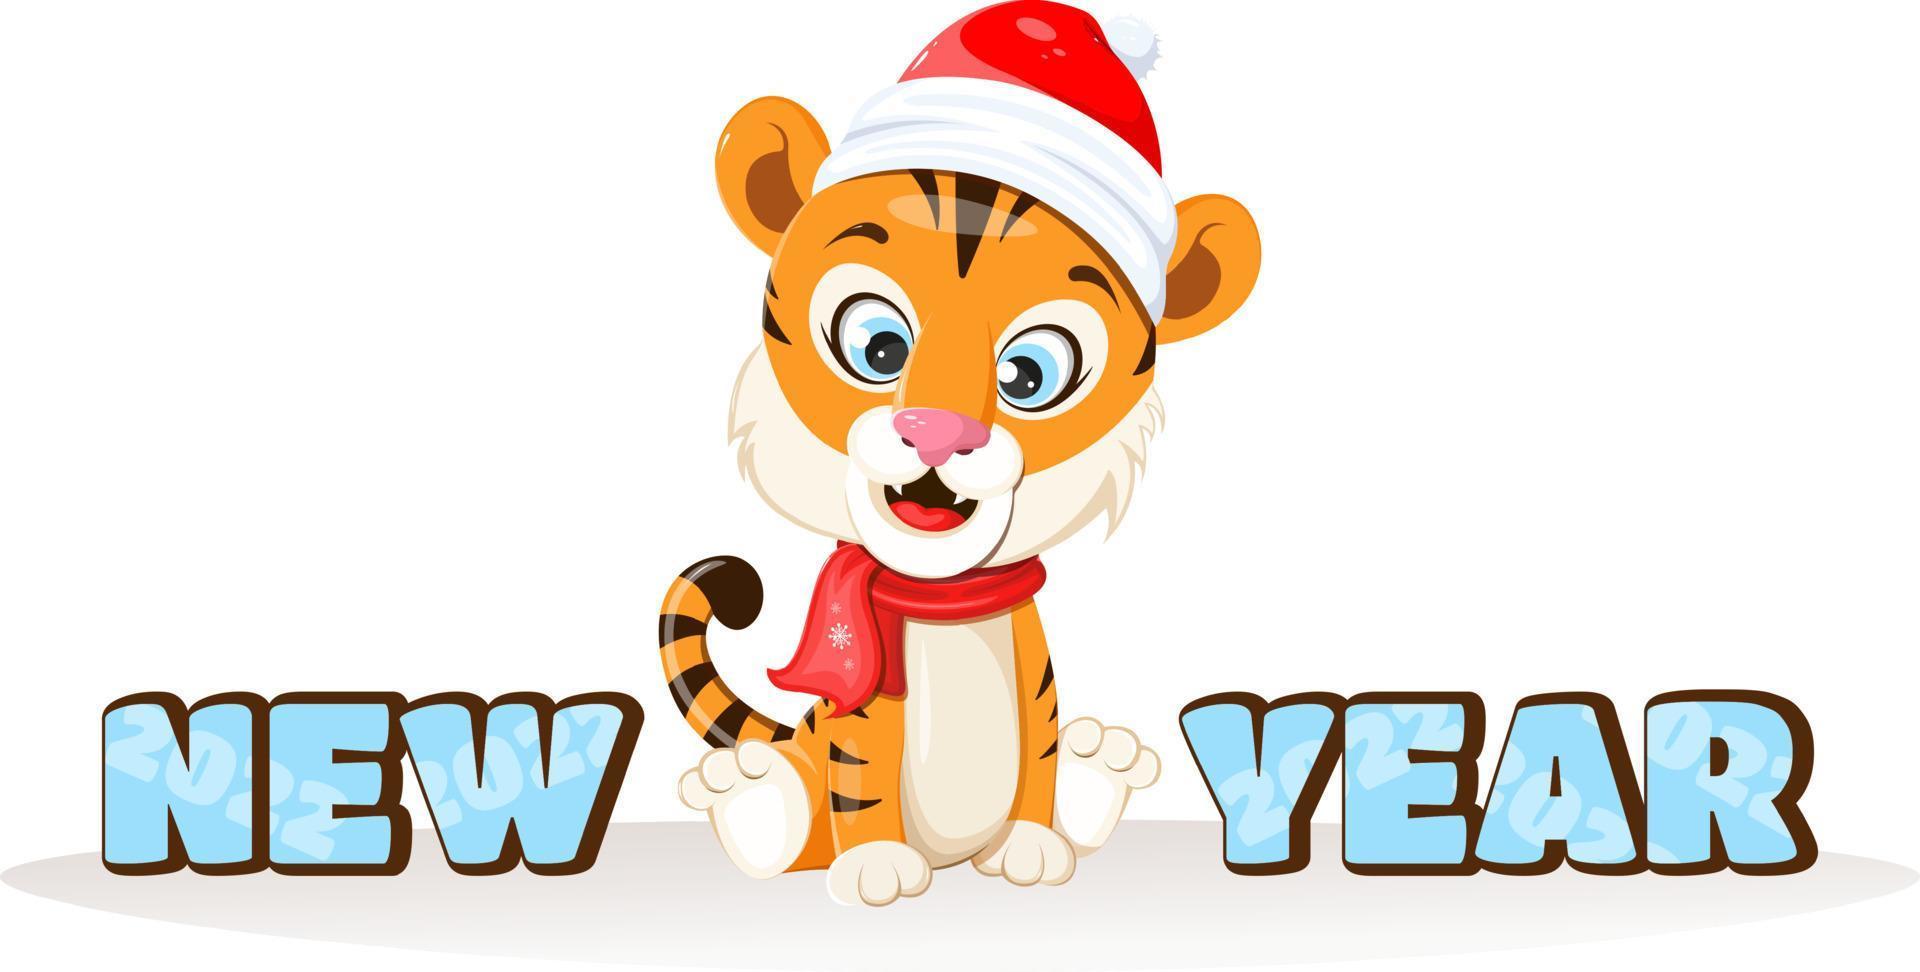 Tiger mit roter Wintermütze und Schal und Text Neujahr im Cartoon-Stil vektor